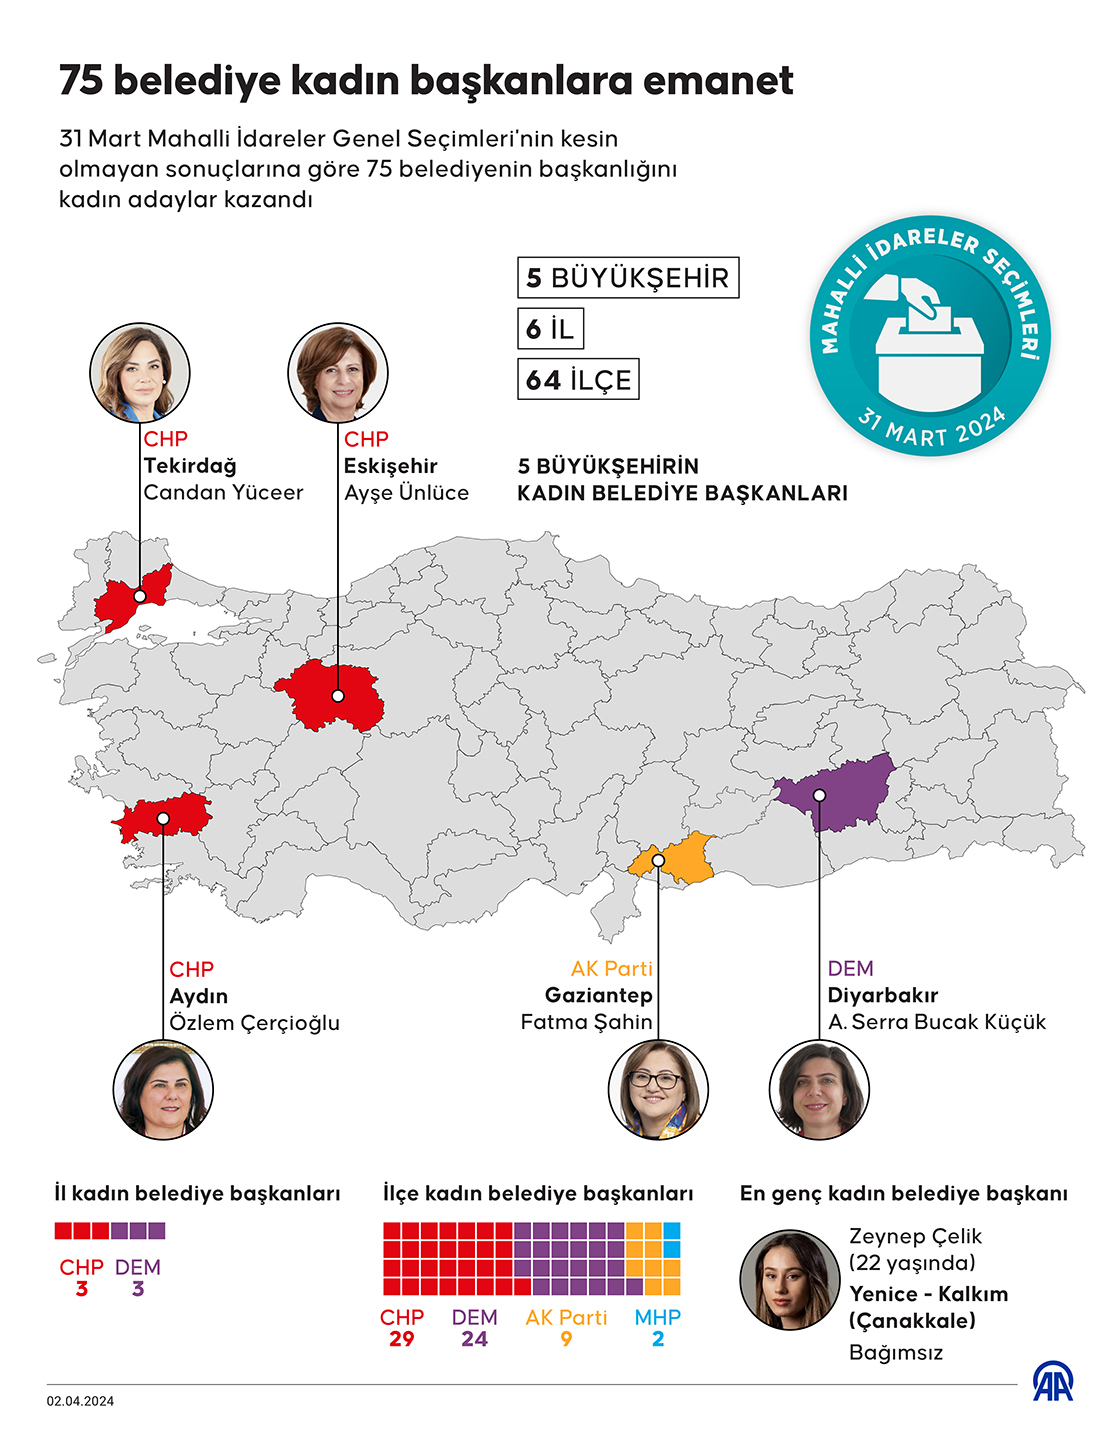 75 belediye kadın başkanlara emanet